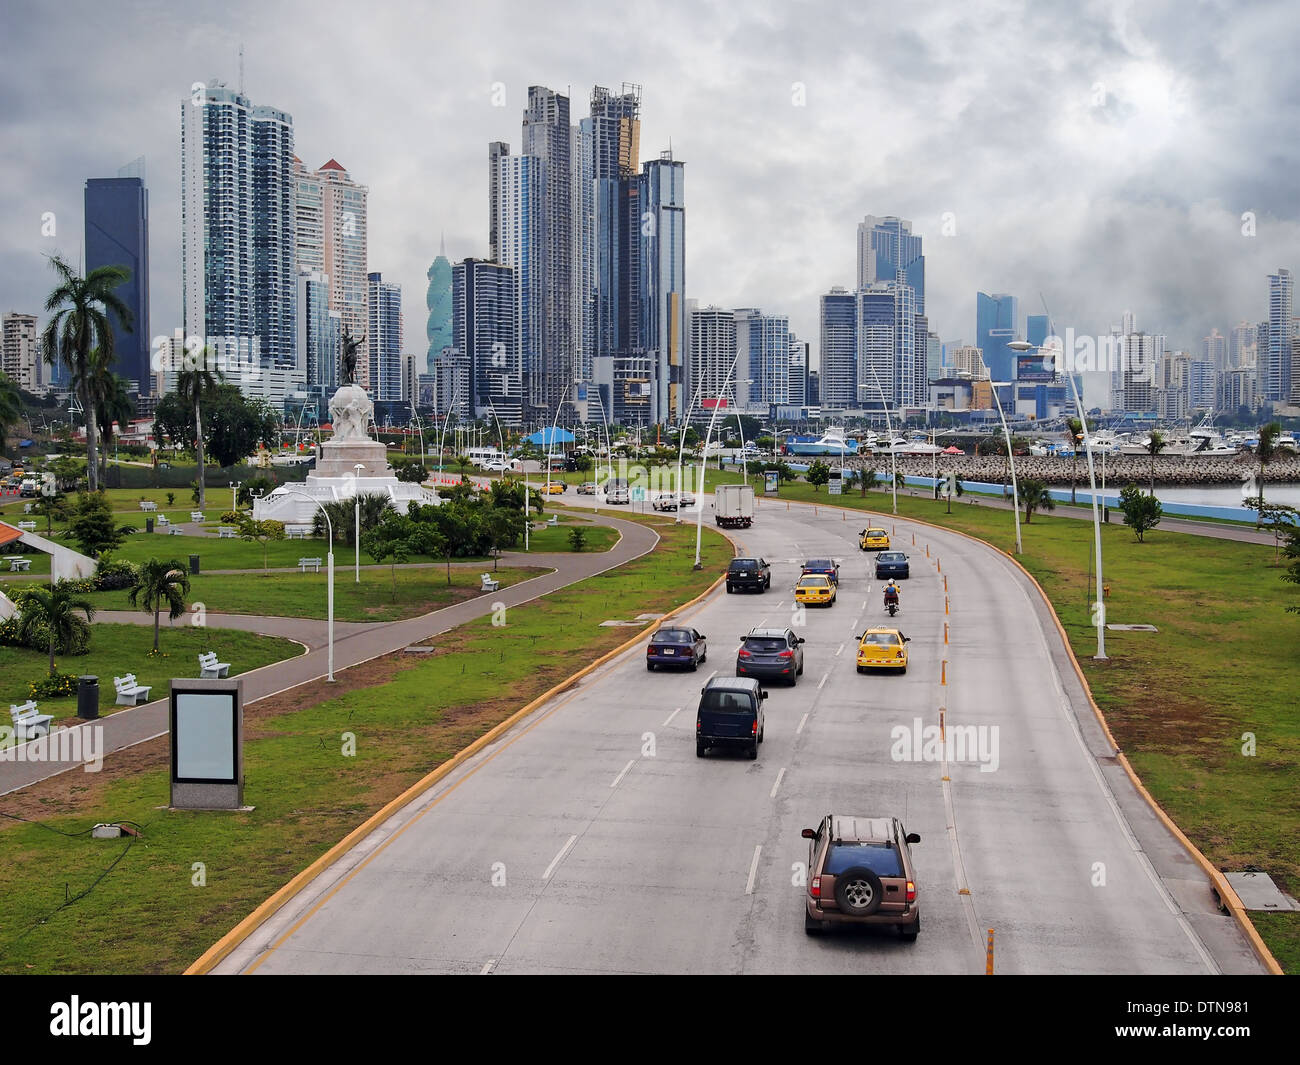 Autostrada ed il grattacielo edifici del centro business in Panama City con cielo nuvoloso, Panama, America Centrale Foto Stock